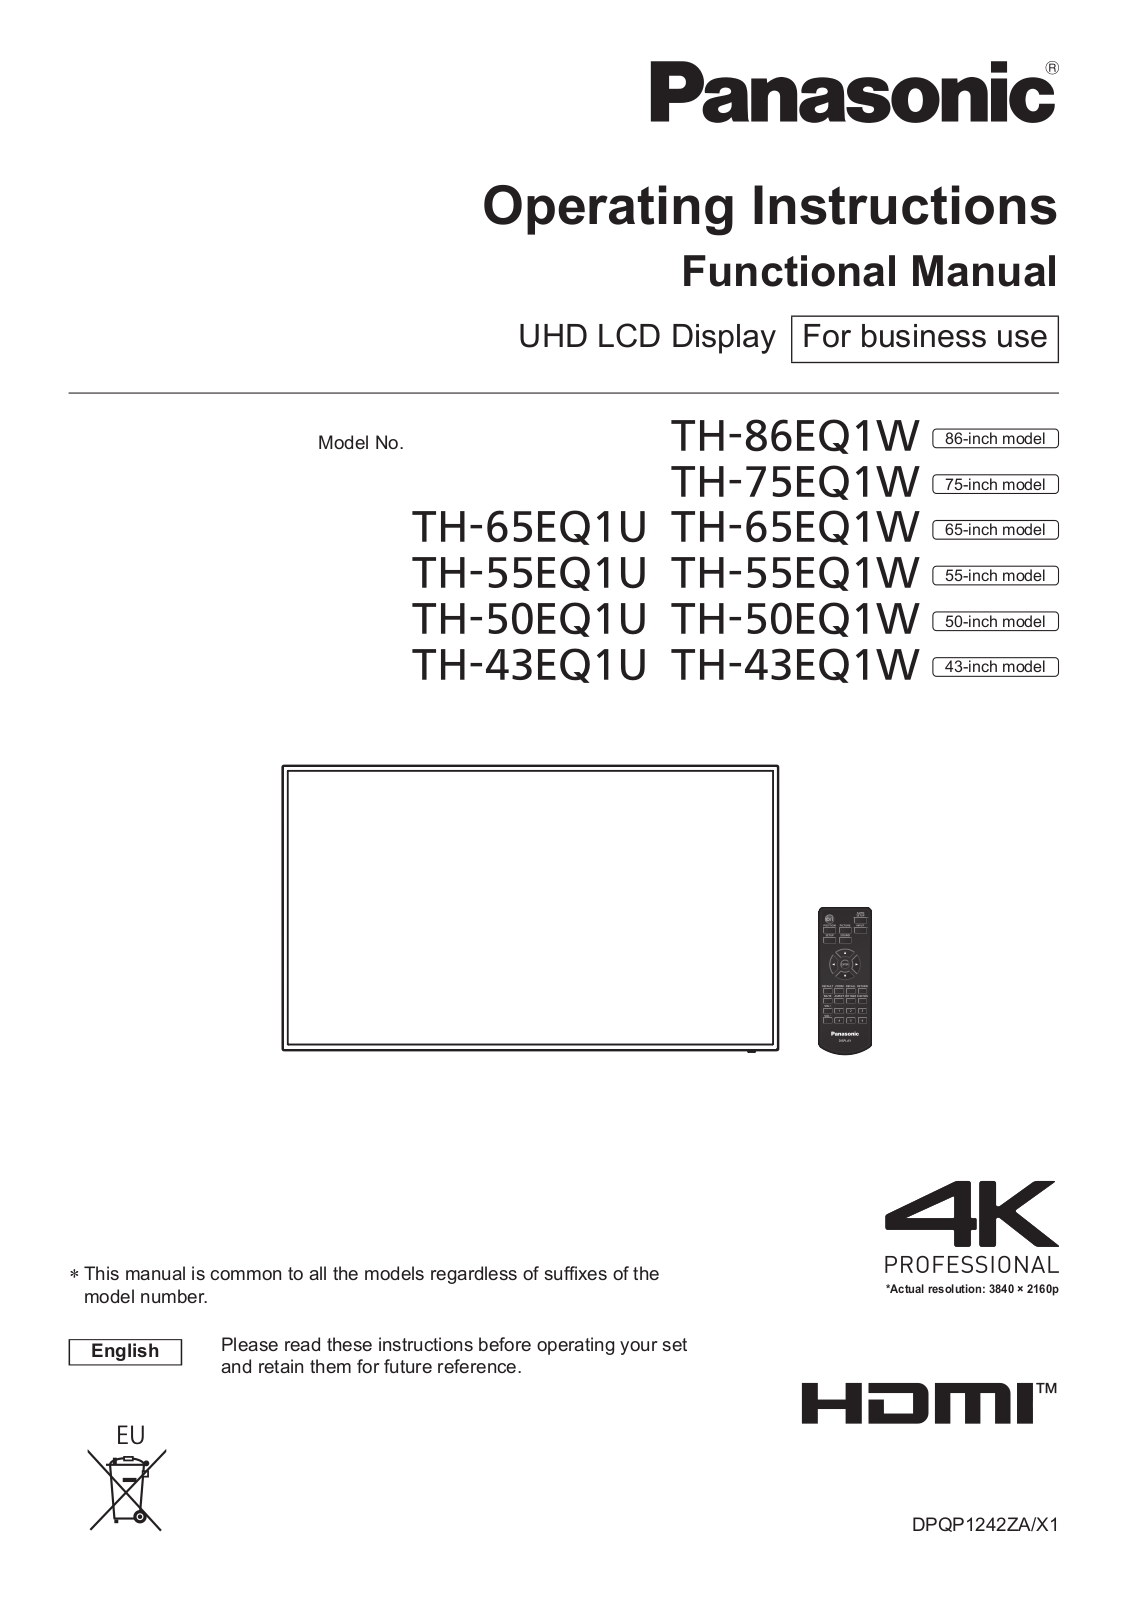 Panasonic TH-50EQ1W User Manual